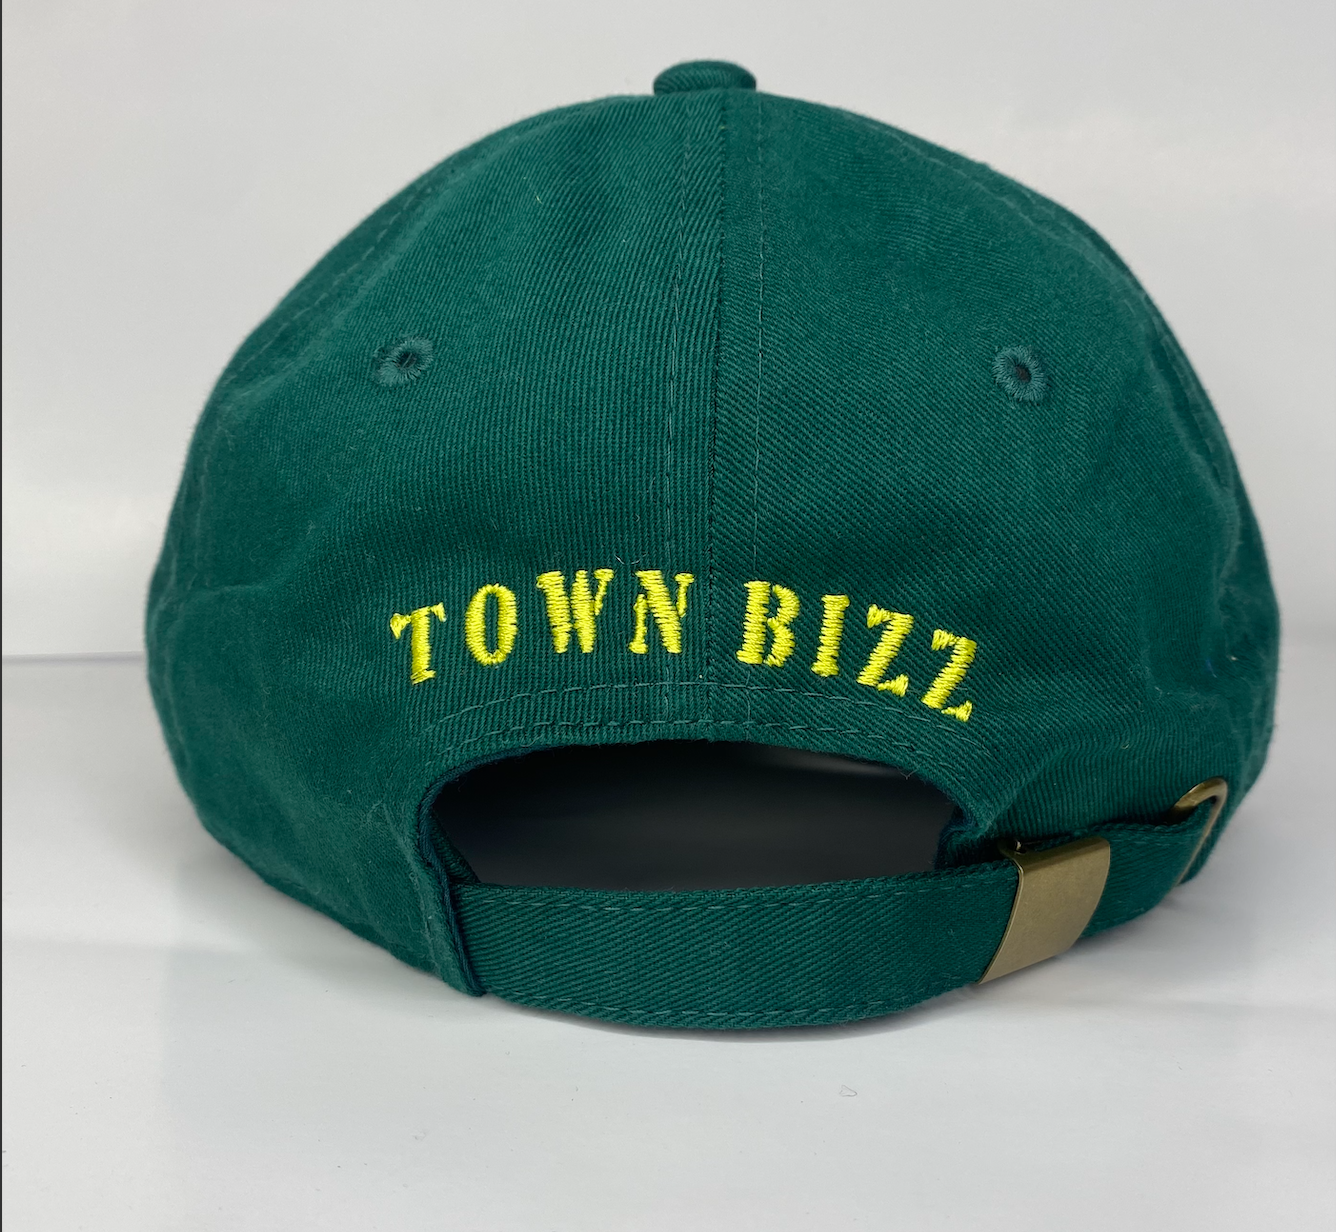 Town Bizz - Oakland Green